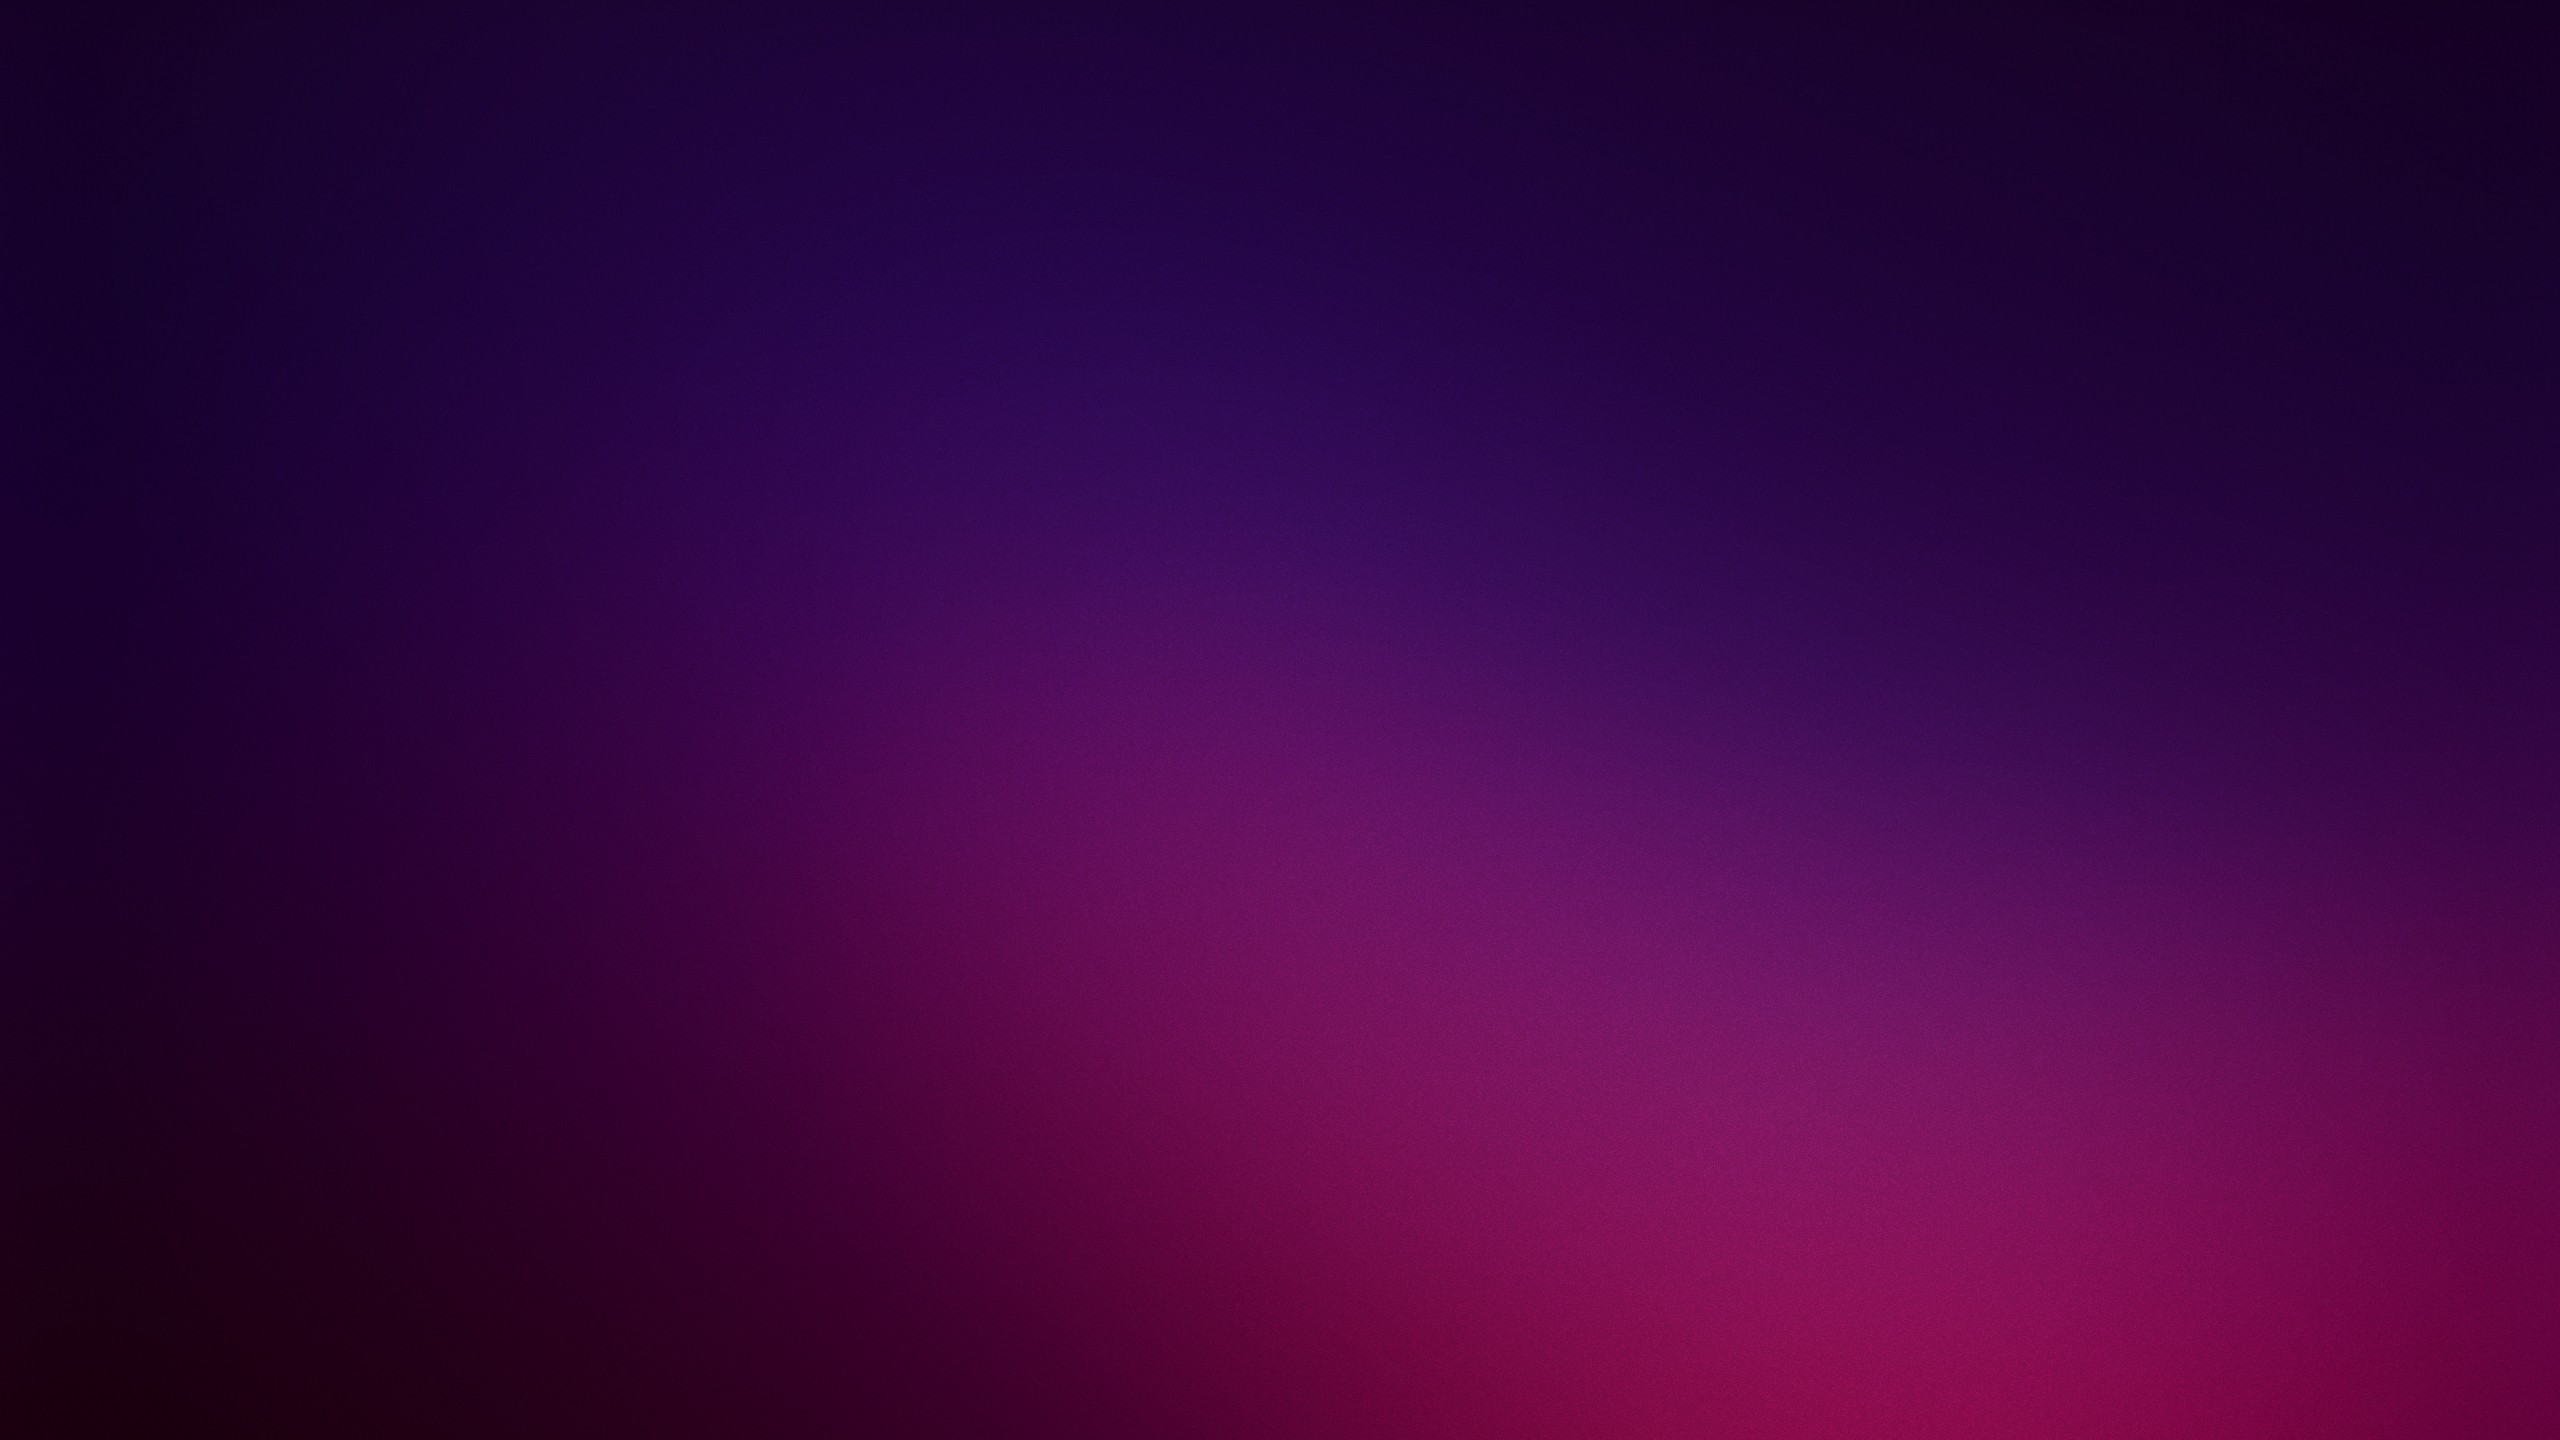 75+] Purple Color Wallpaper - WallpaperSafari